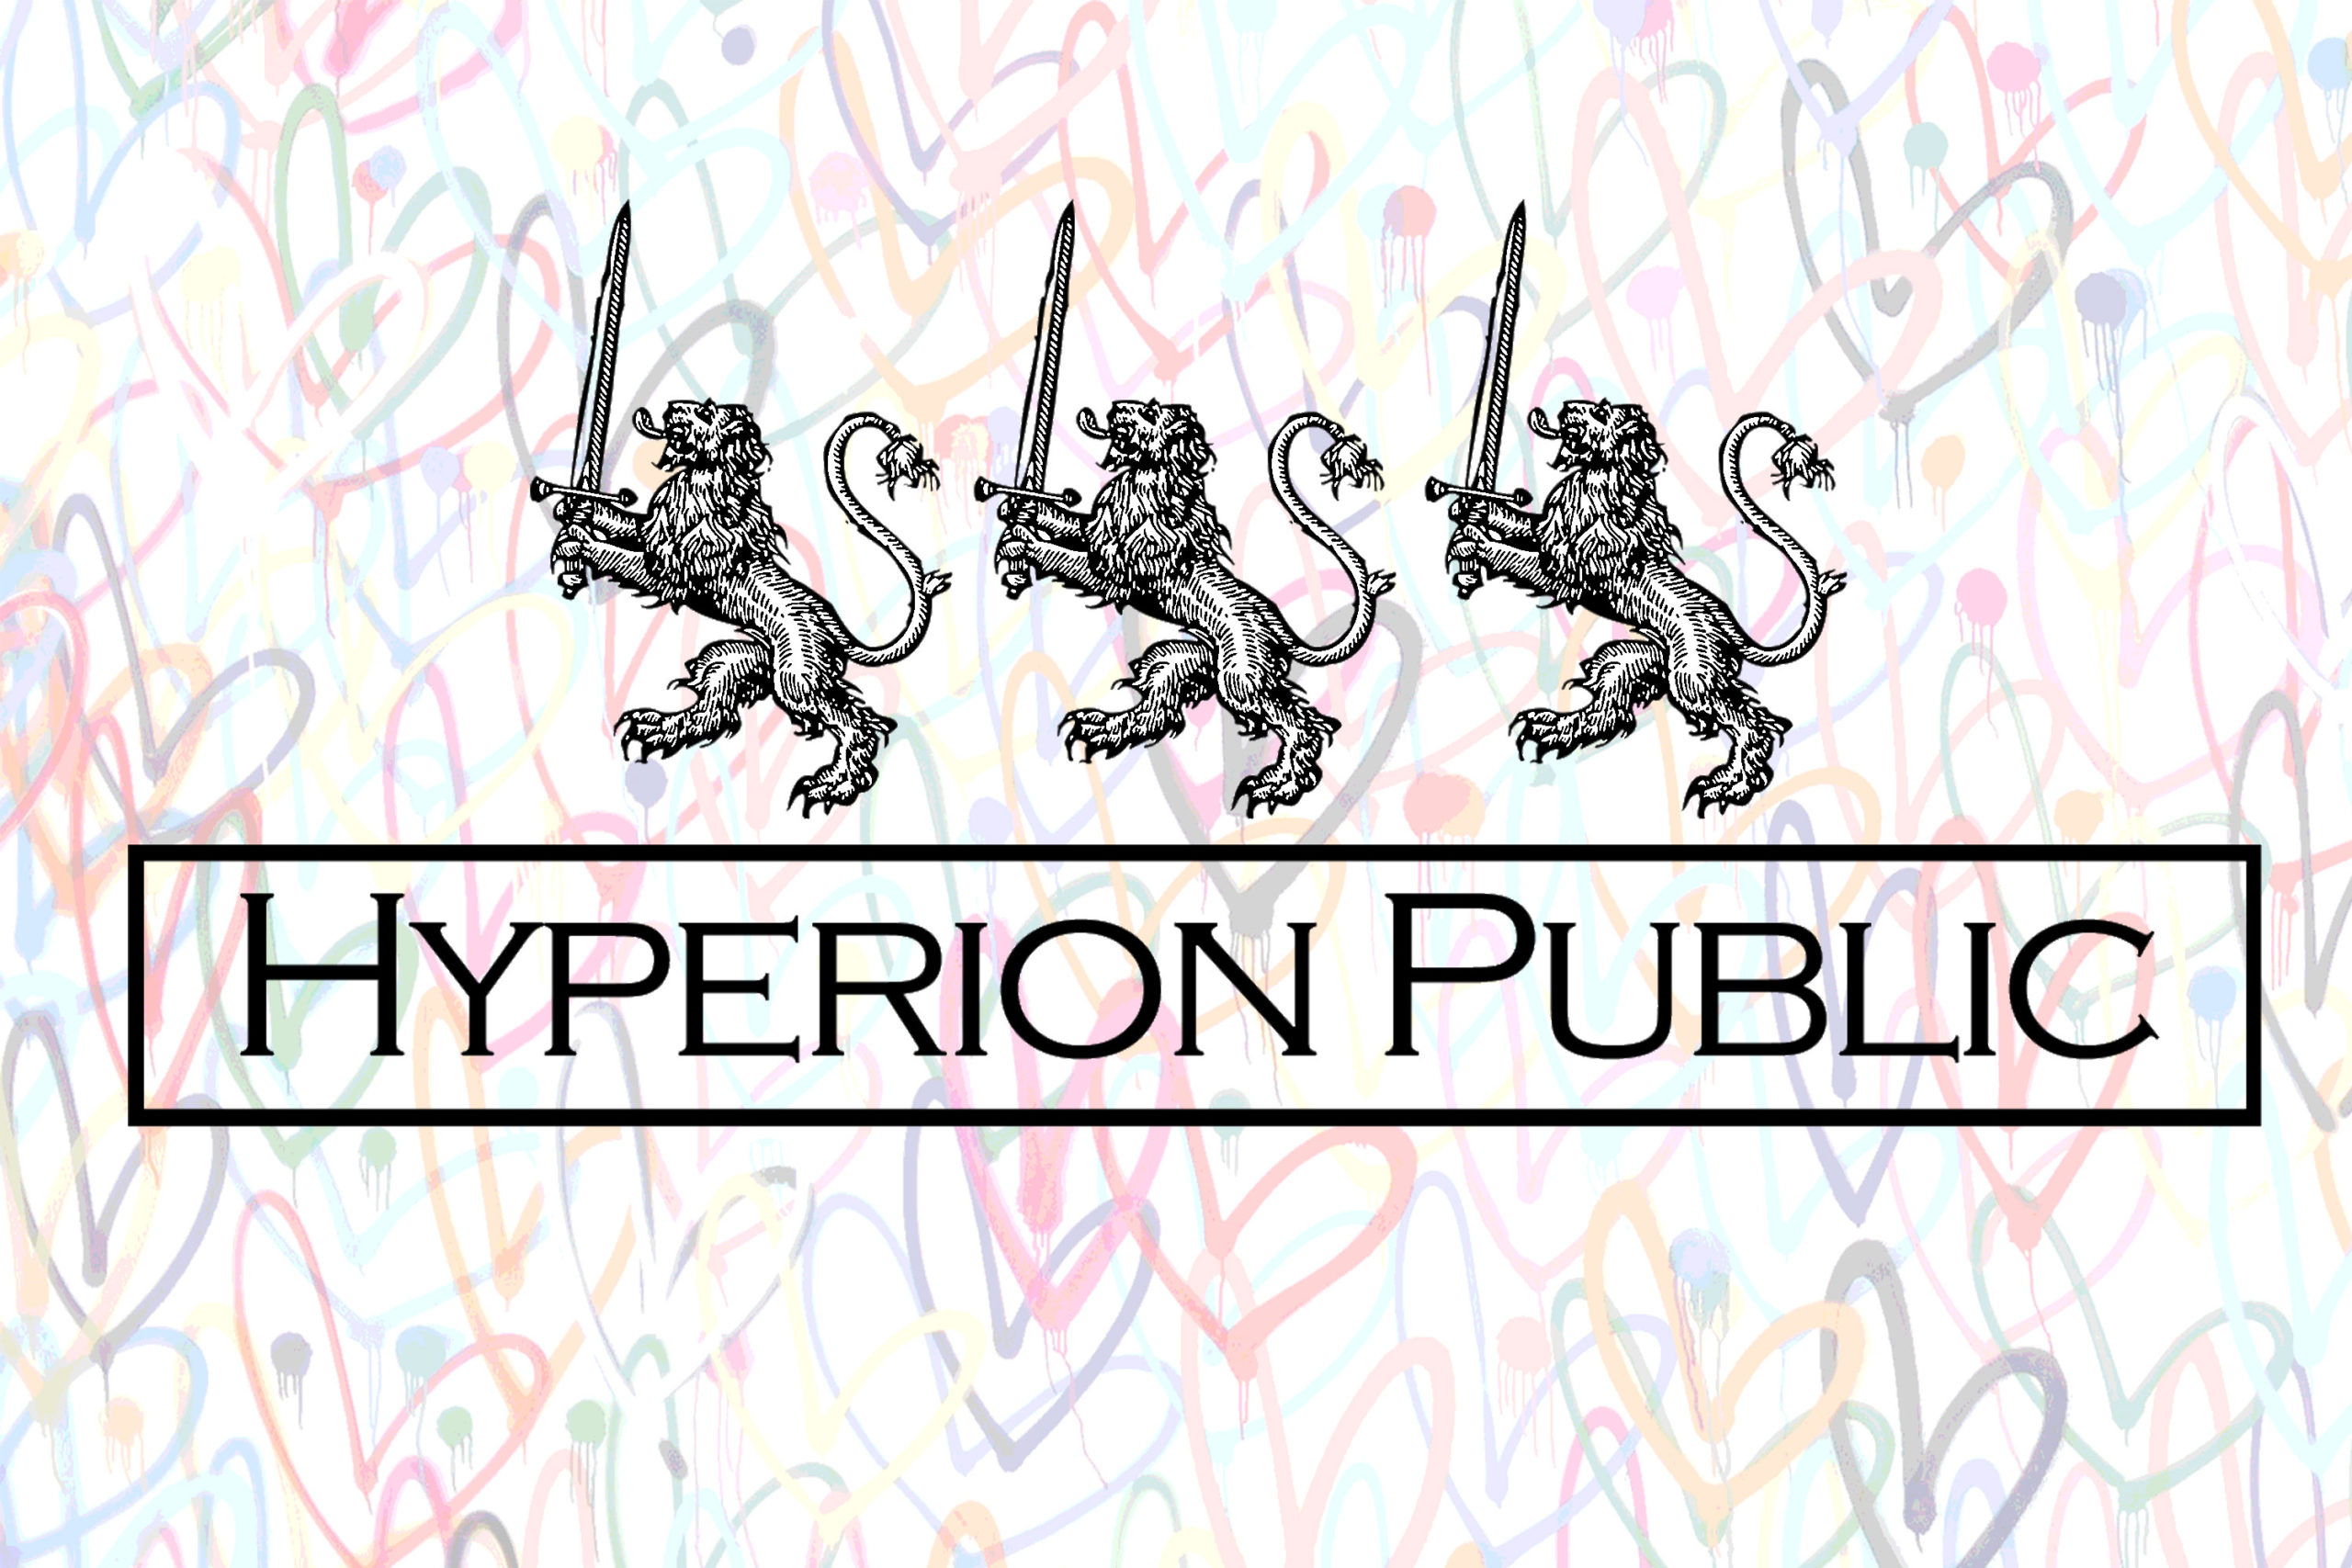 Hyperion Public – Silver Lake